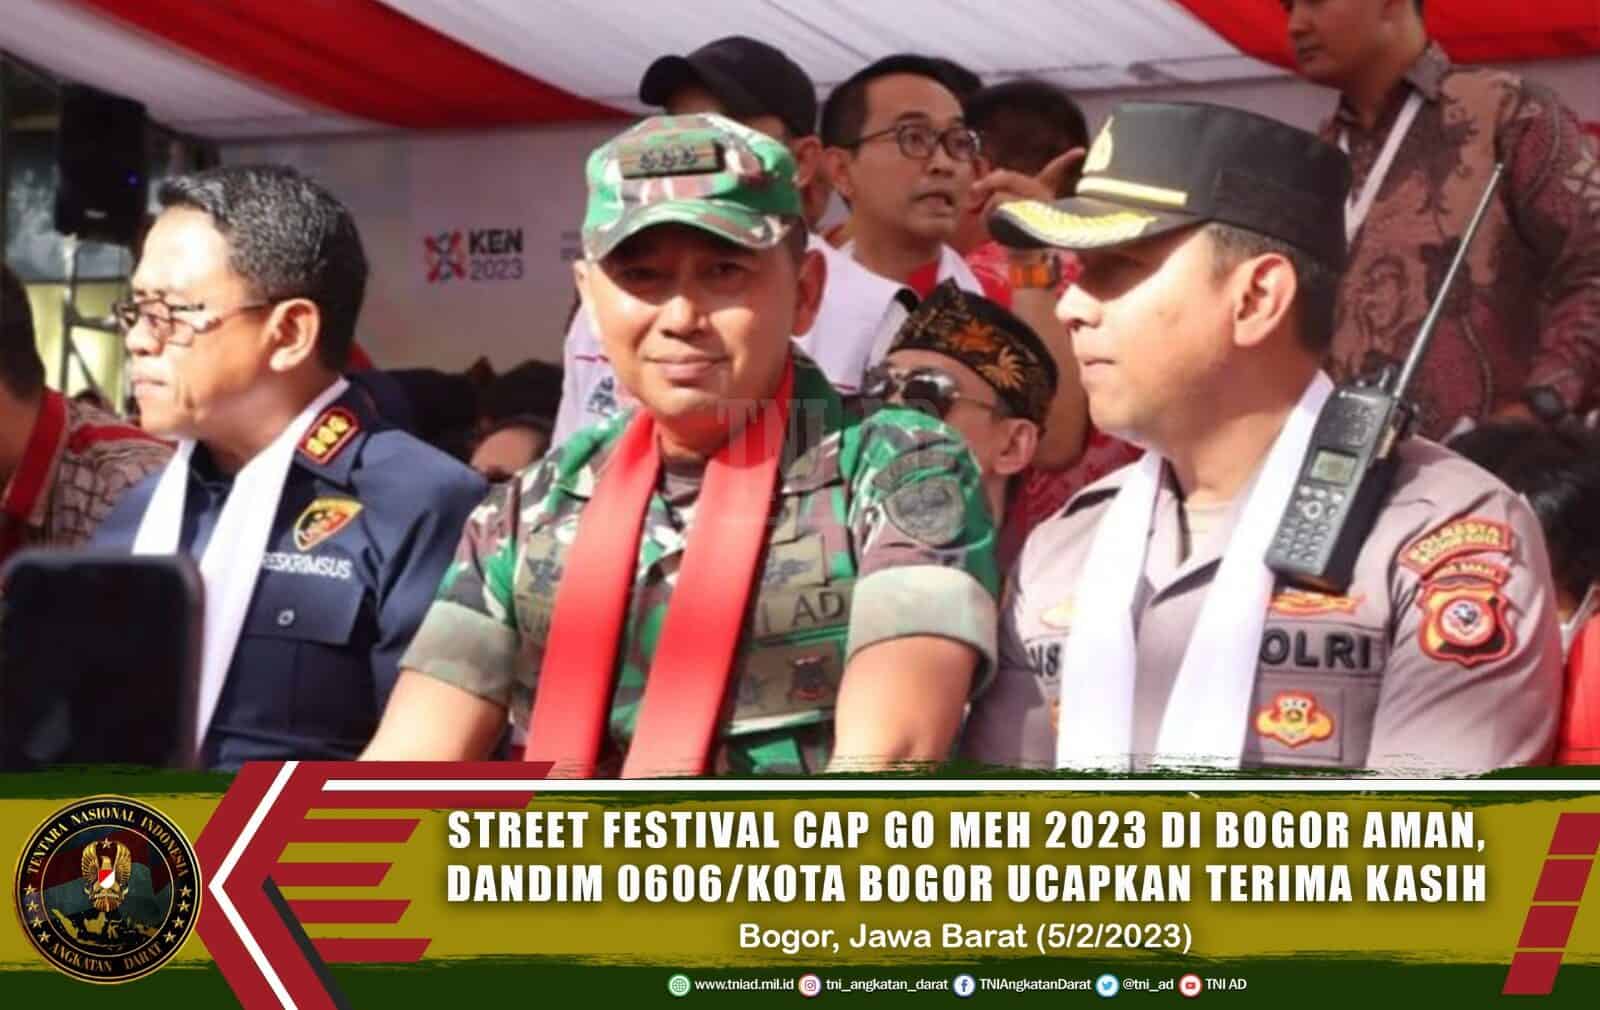 Street Festival Cap Go Meh 2023 di Bogor Aman, Dandim 0606/Kota Bogor Ucapkan Terima Kasih